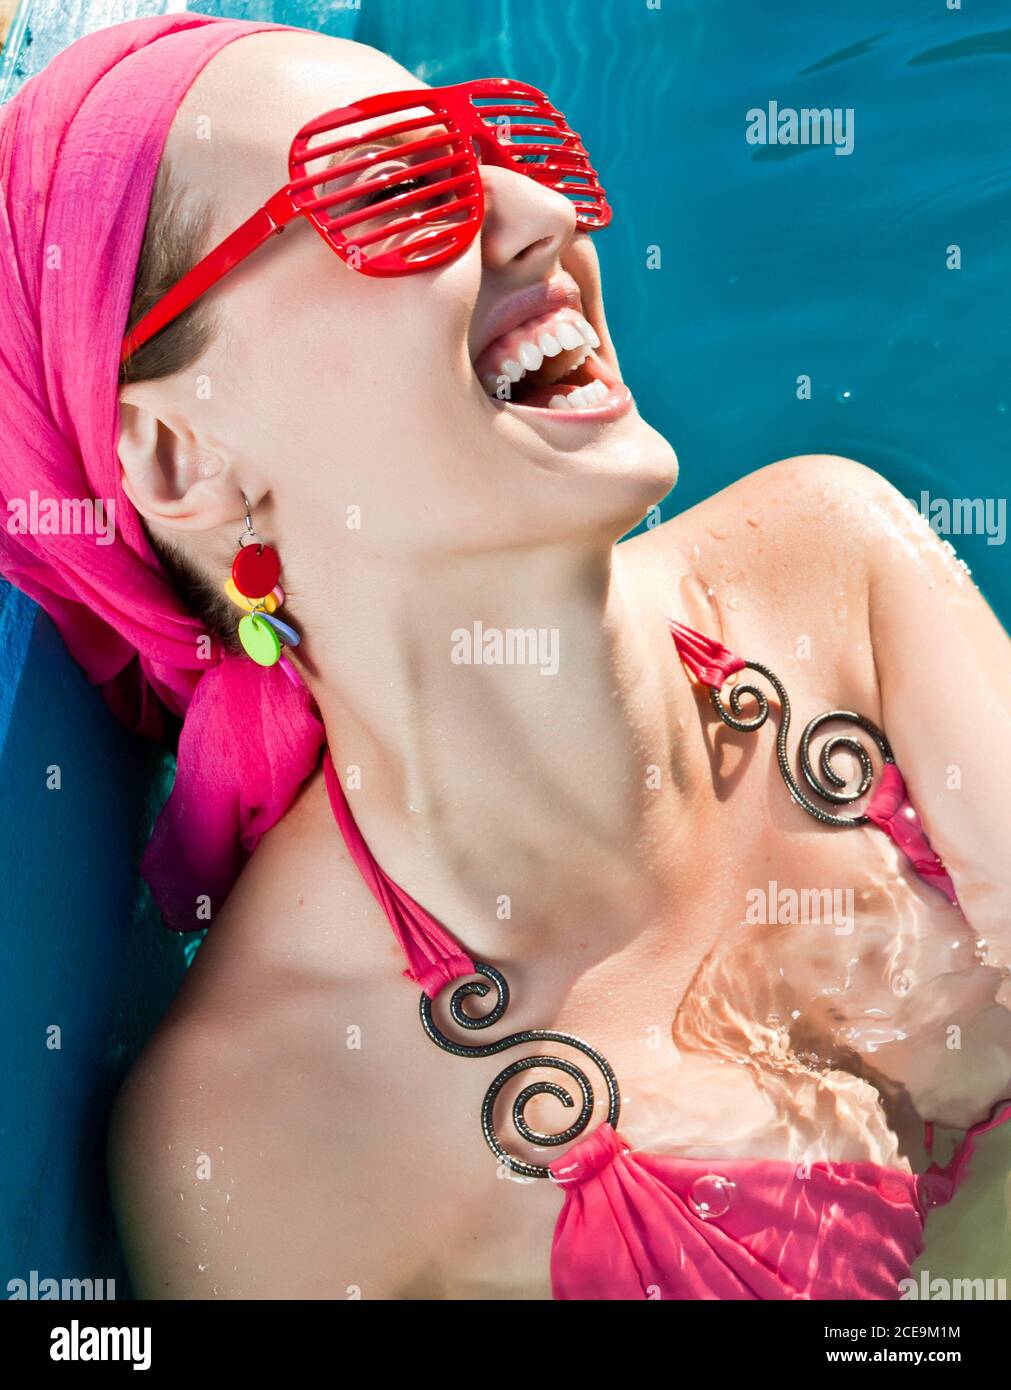 mujer sonriente con gafas de sol rojas en la piscina Foto de stock